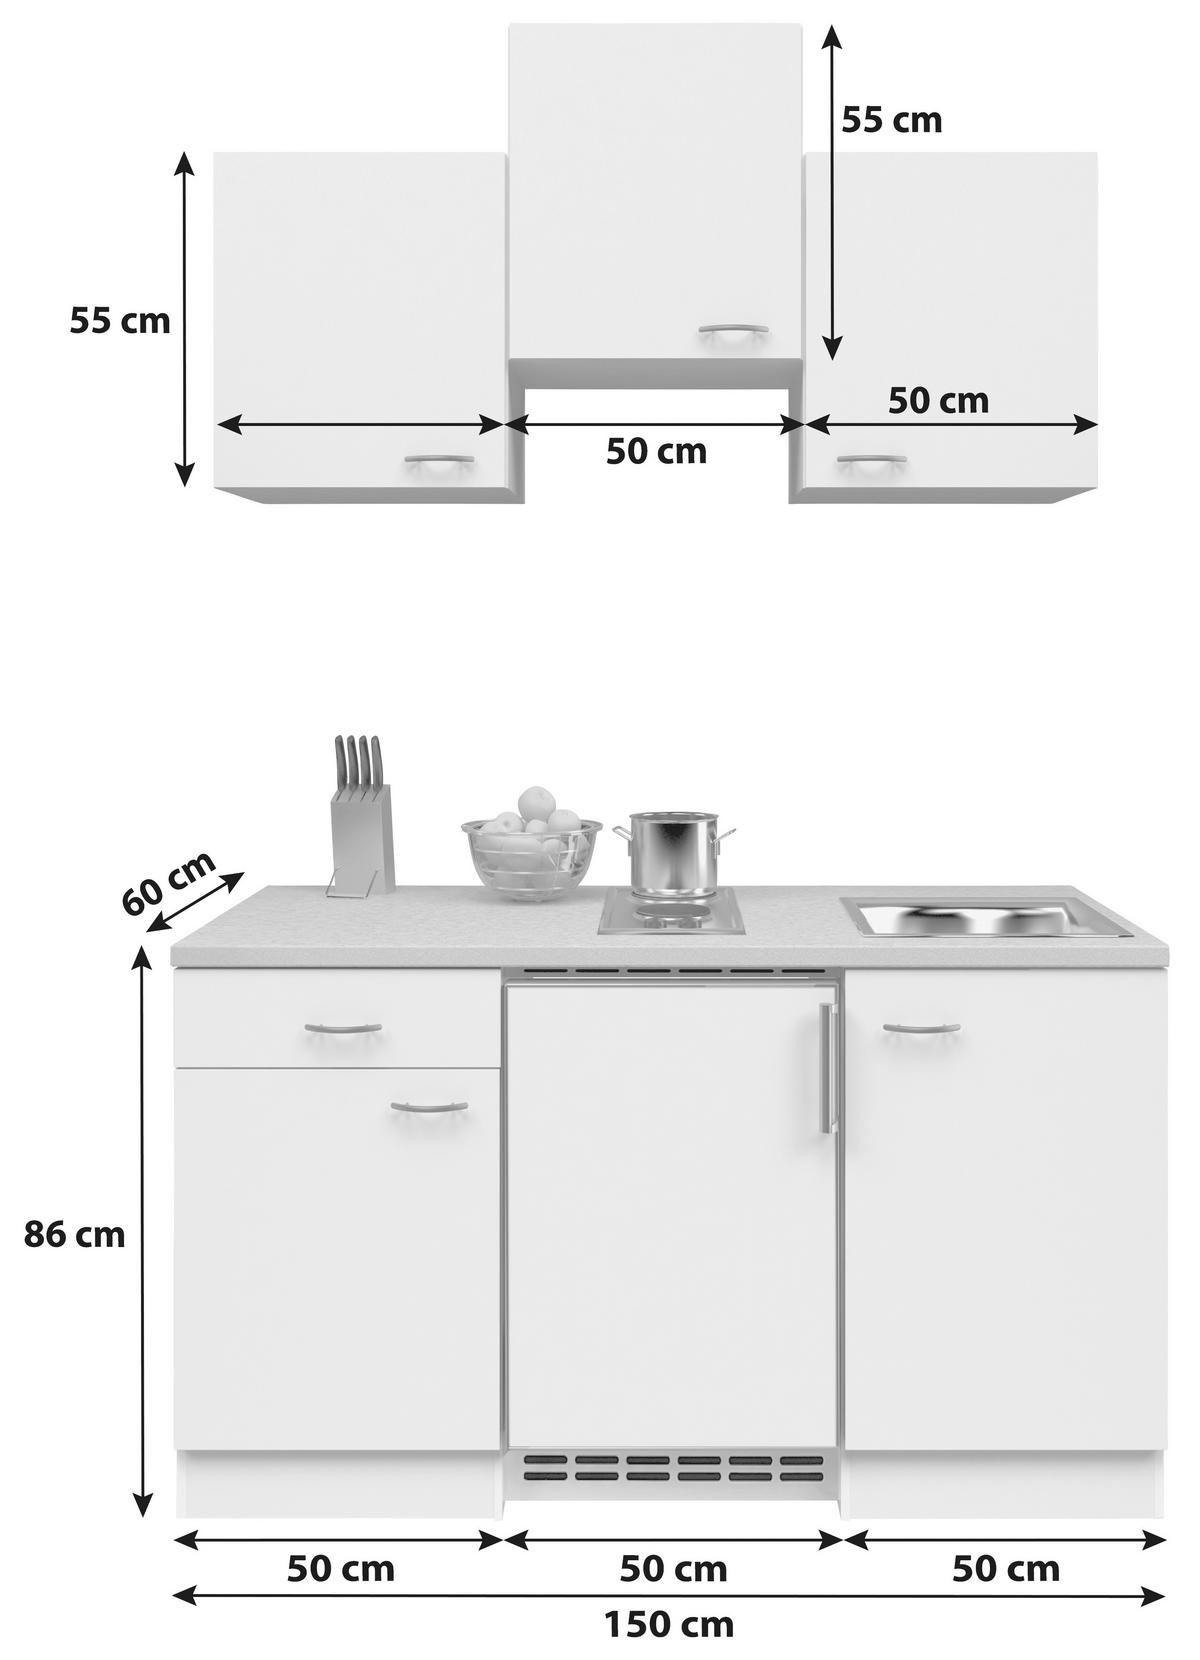 Küchenblock inkl. Spüle ➤ Geräte \'Wito\' in Weiss mömax online kaufen und